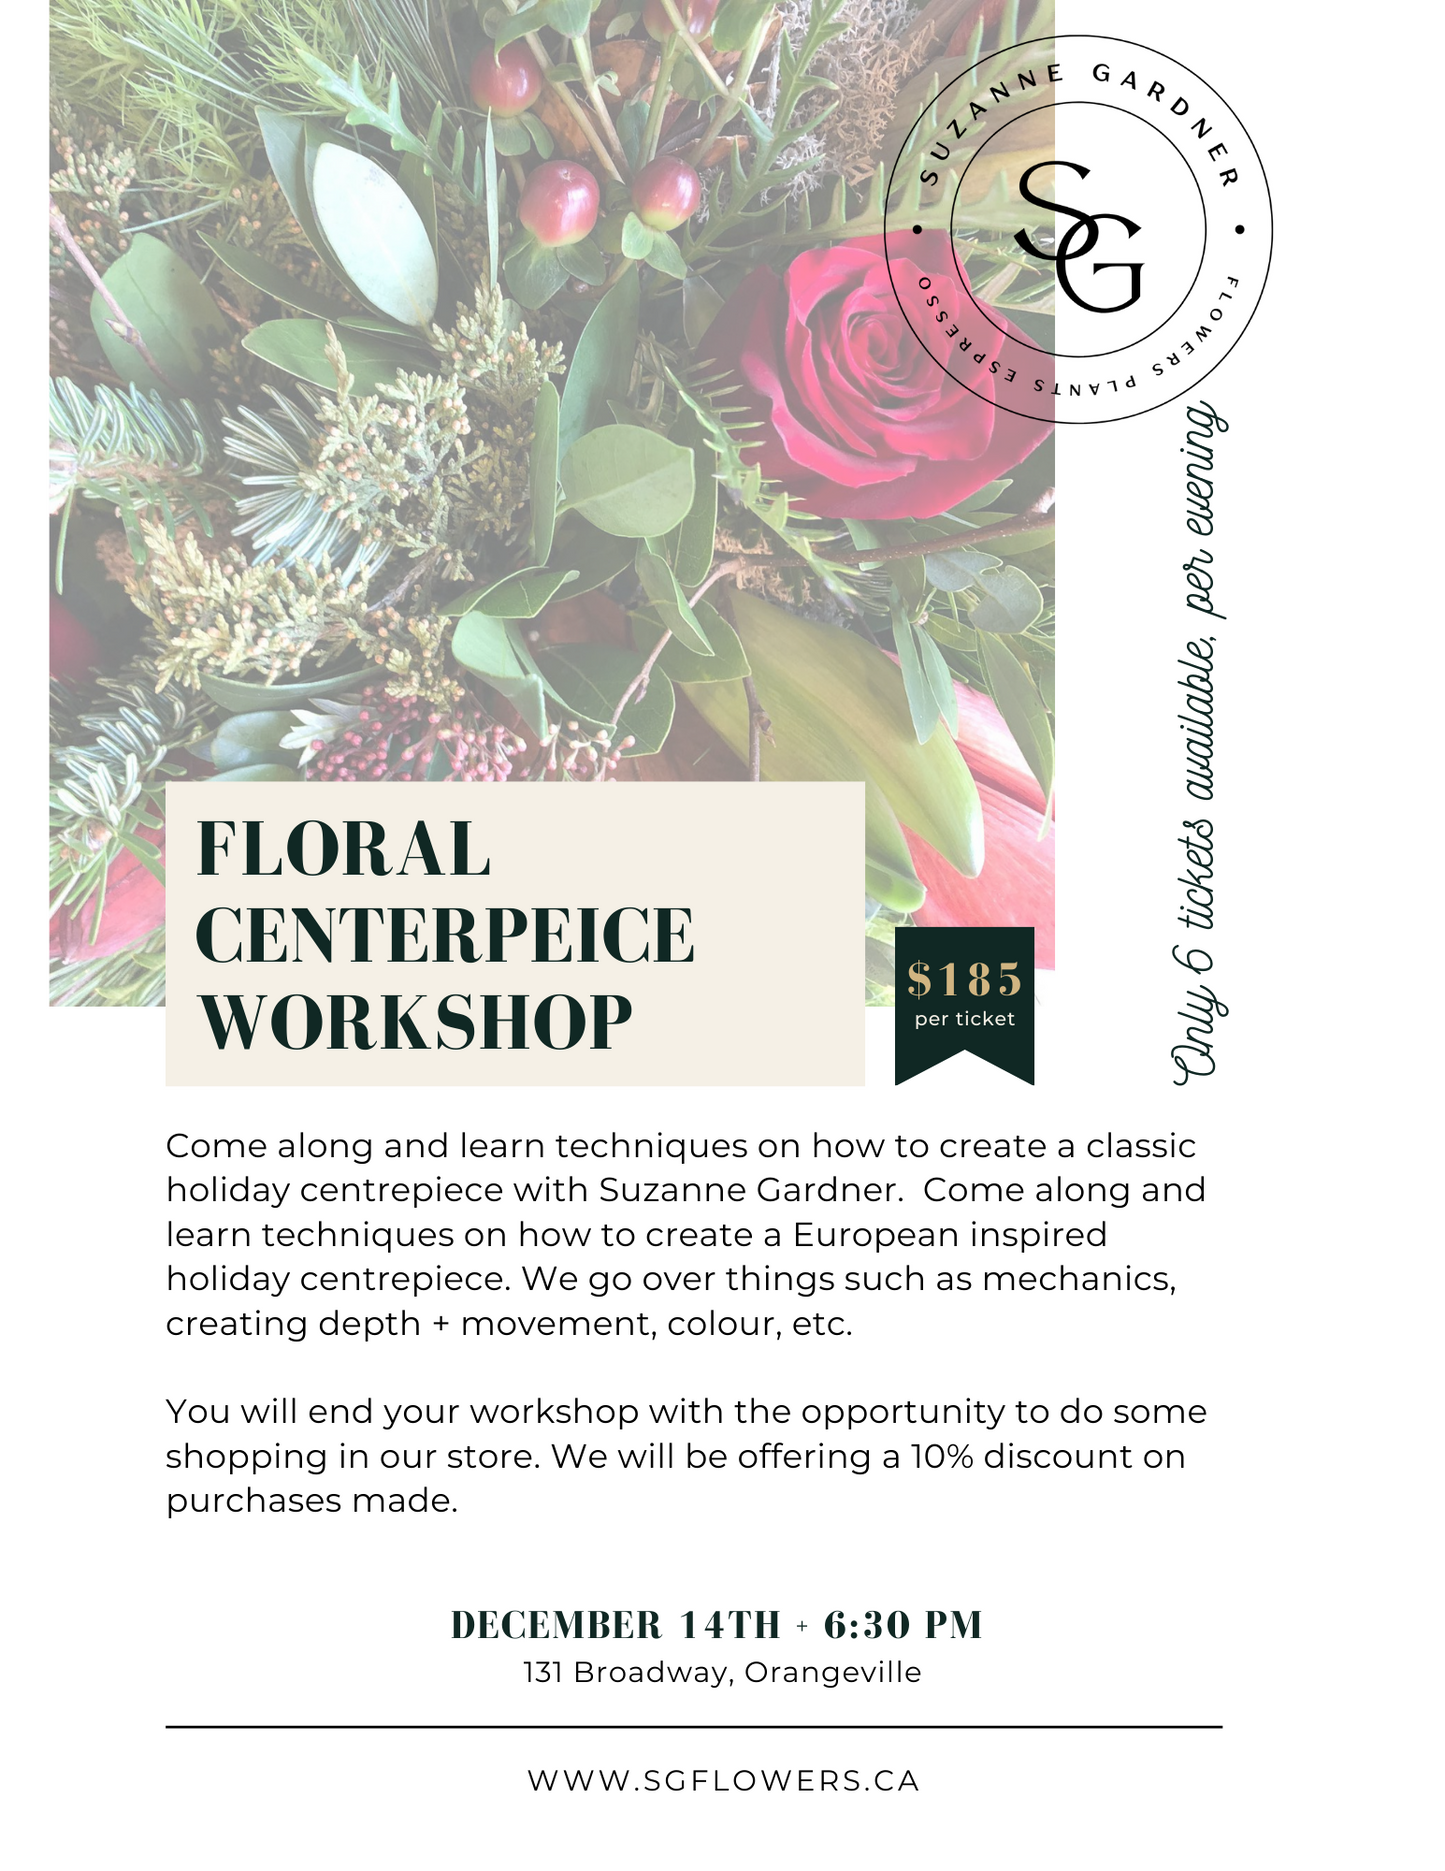 Floral Centrepiece Workshop